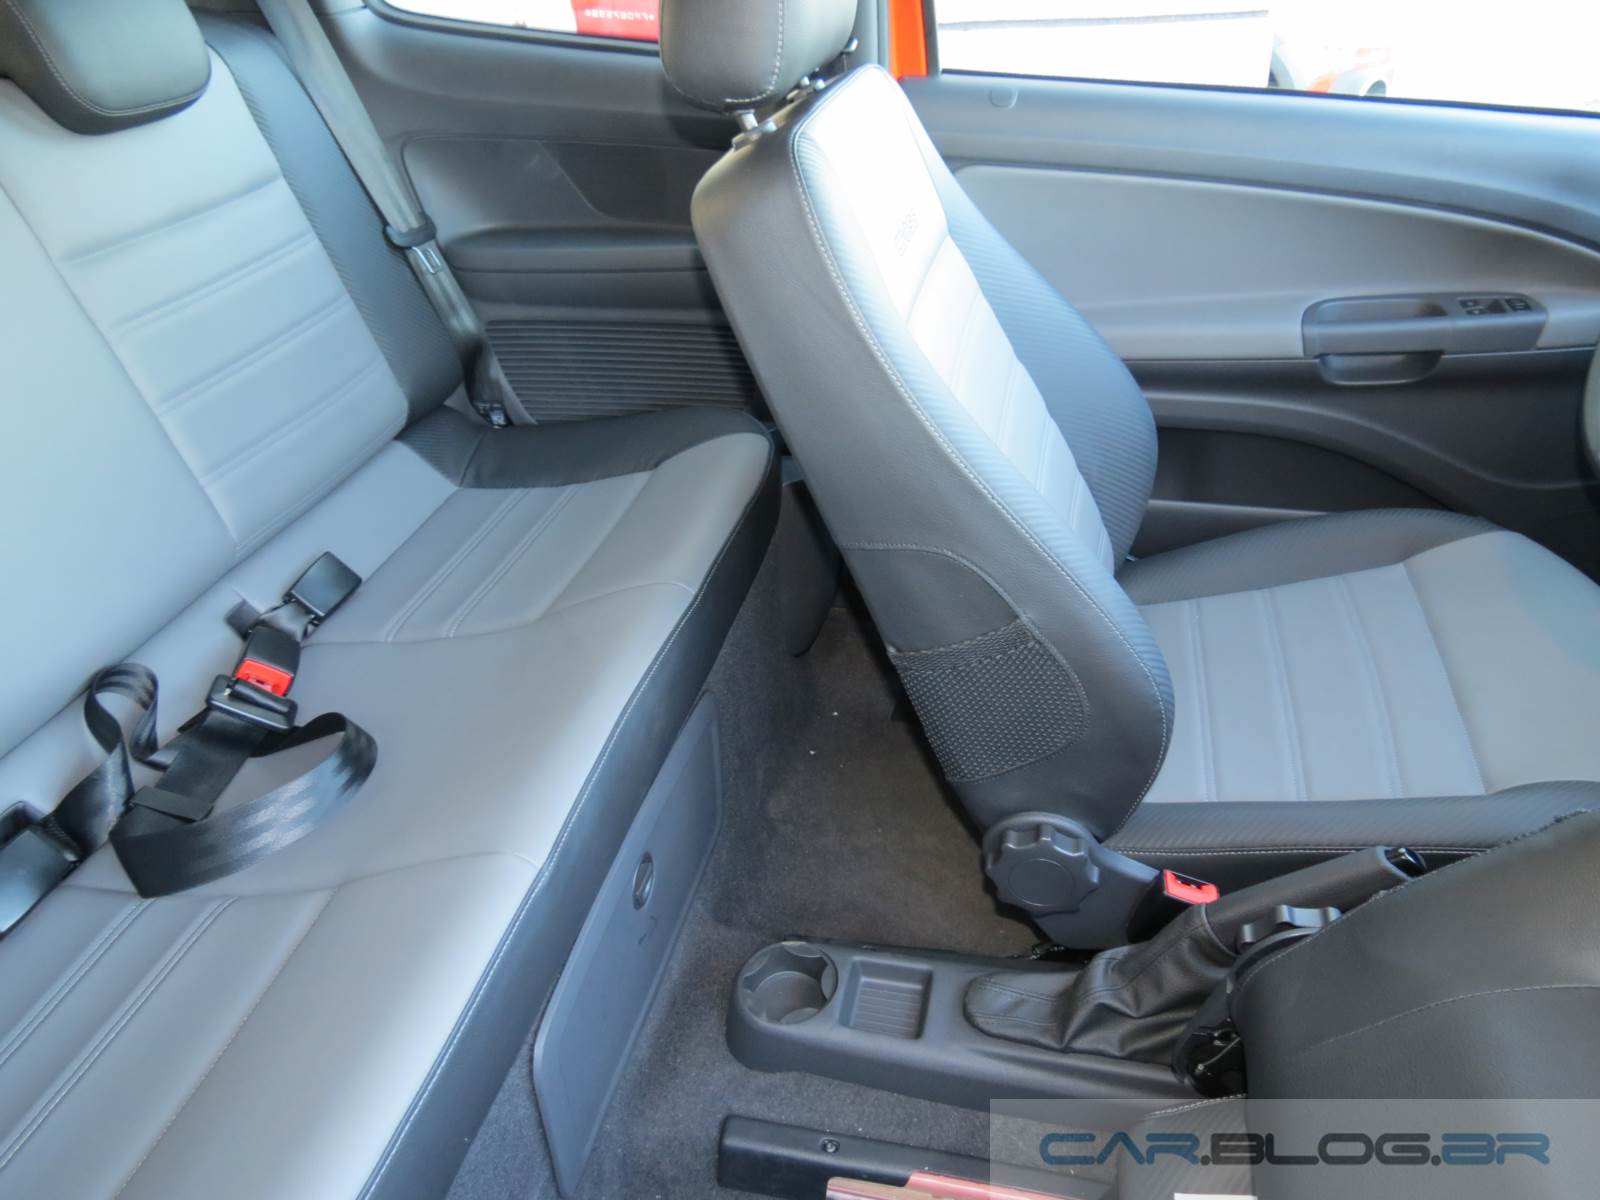 VW Saveiro Cabine Dupla - interior